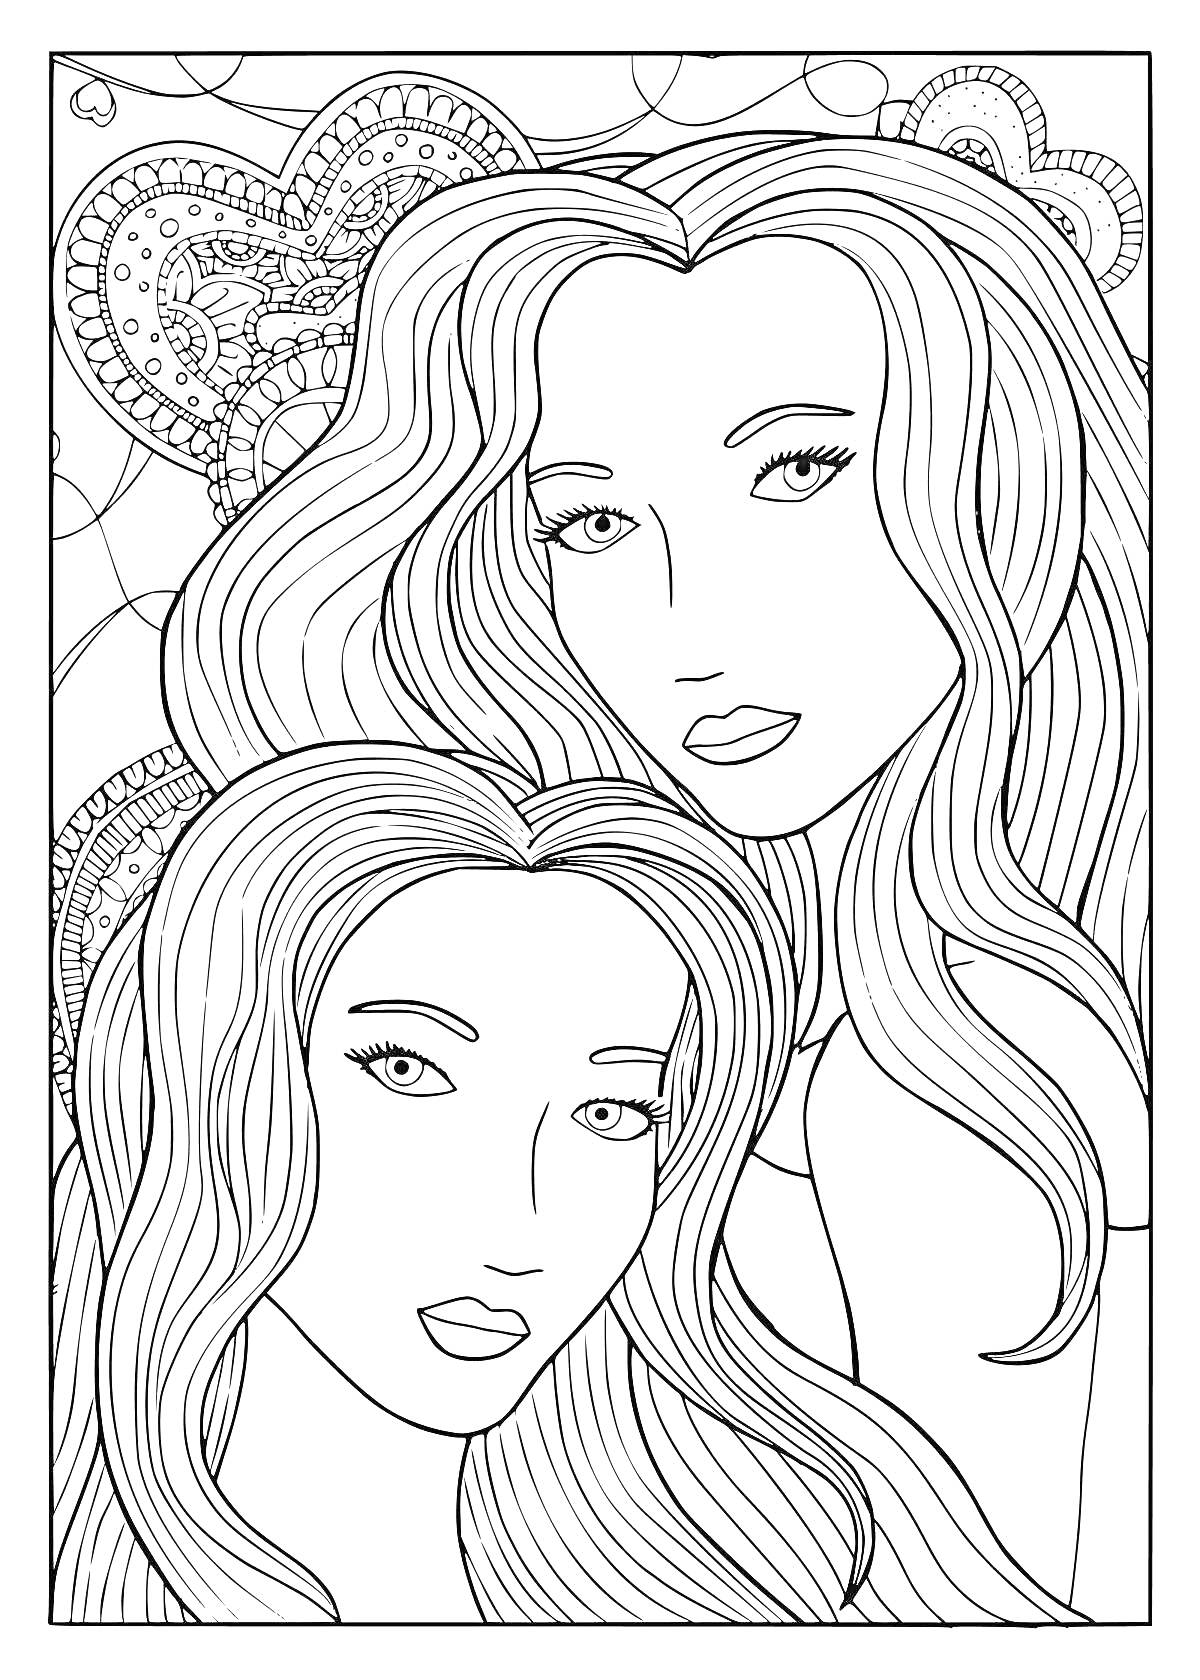 Раскраска Две девушки с длинными волосами на фоне узорчатых сердец